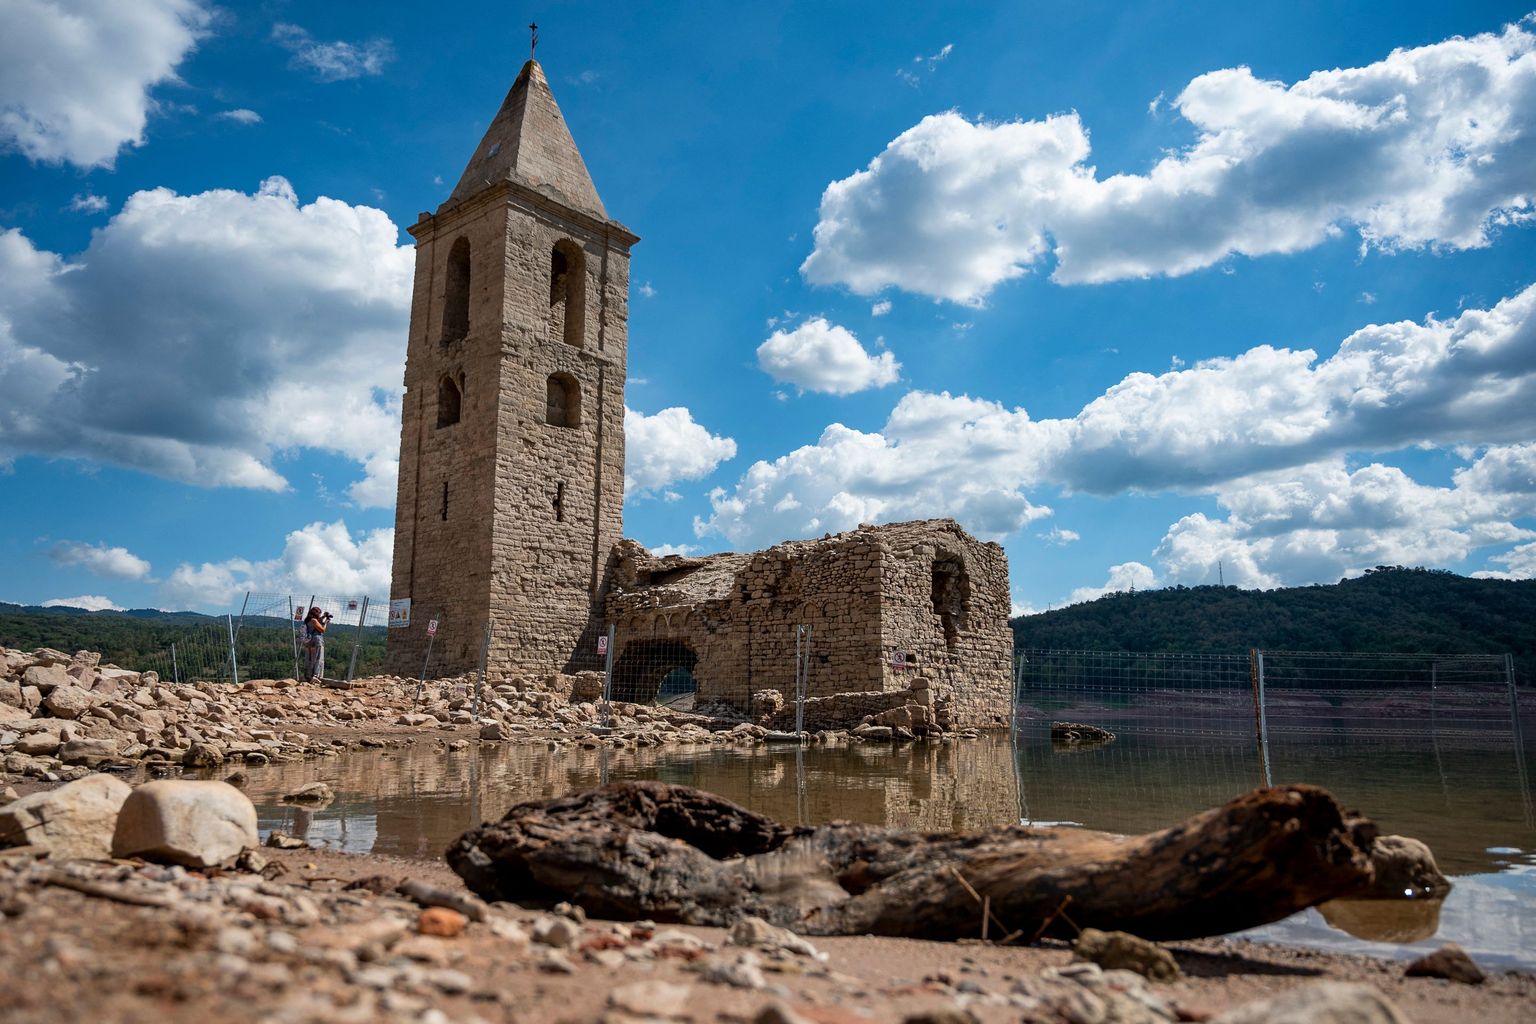 23. augustil tehtud foto Sau soost ja Kataloonias Girona provintsis asuvast Sant Roma de Sau kiriku varemetest. Sau soo on Teri jõe veehoidla, mis tekkis pärast Vilanova de Sau tammi rajamist eelmise sajandi keskel. 
Pärast seda kattis vesi Sant Roma de Sau küla, mille kirik on endiselt nähtav siis, kui veehoidla veetase on madal. Sau soo kirik on maailma vanim vees püstiselt säilinud kirik.